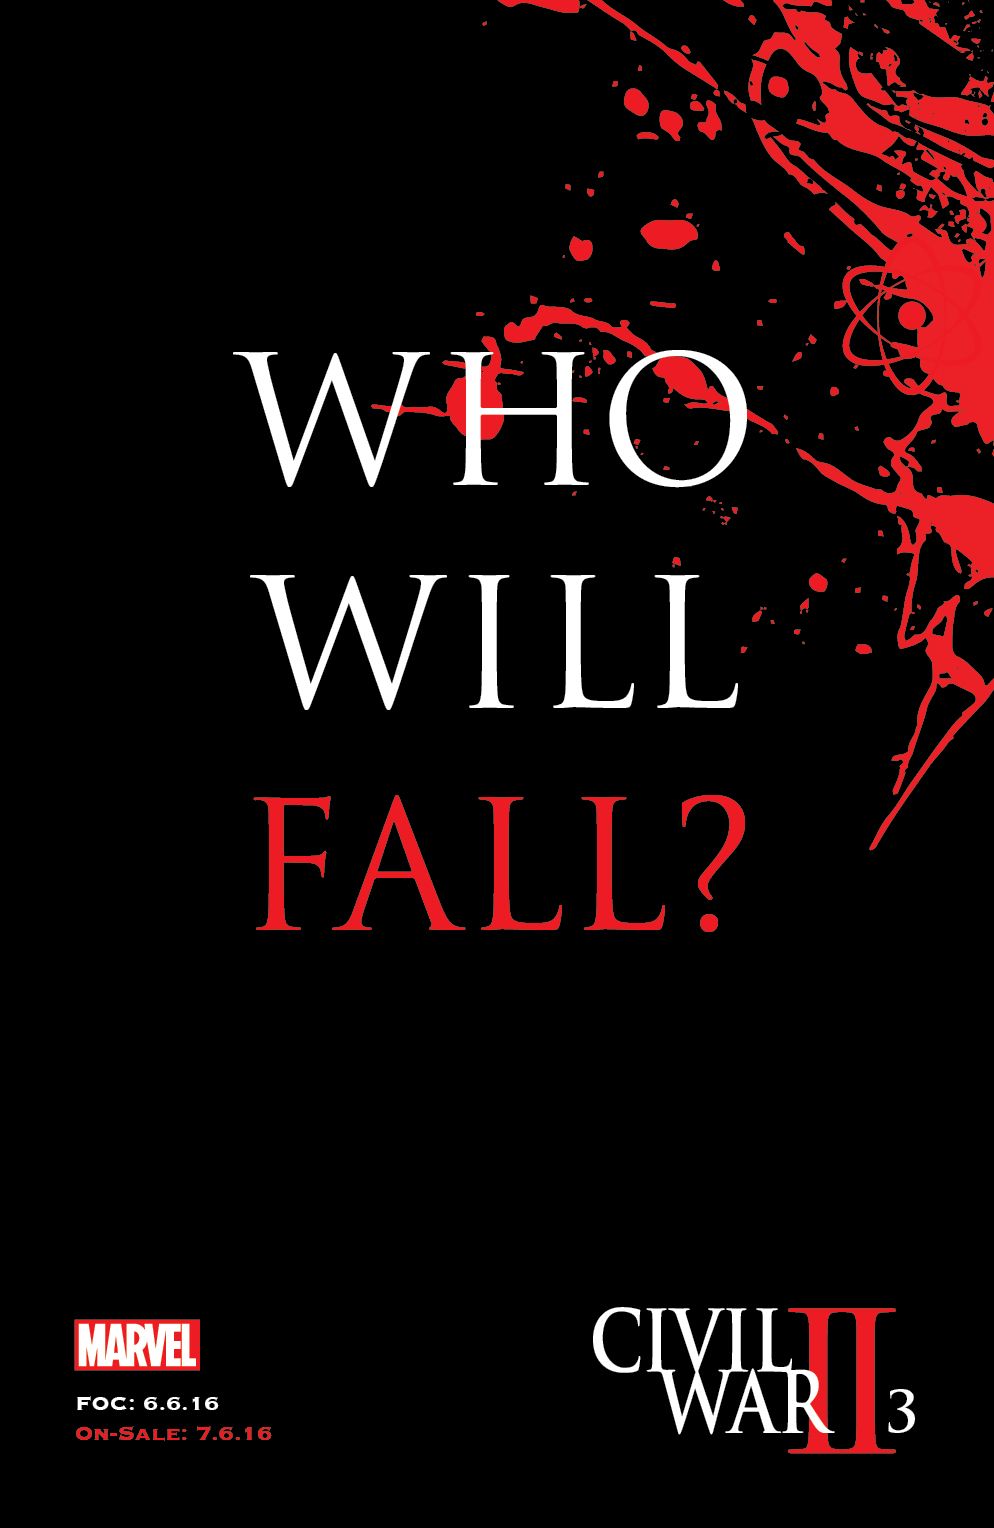 Marvel Civil War II #3 - Who Will Fall?